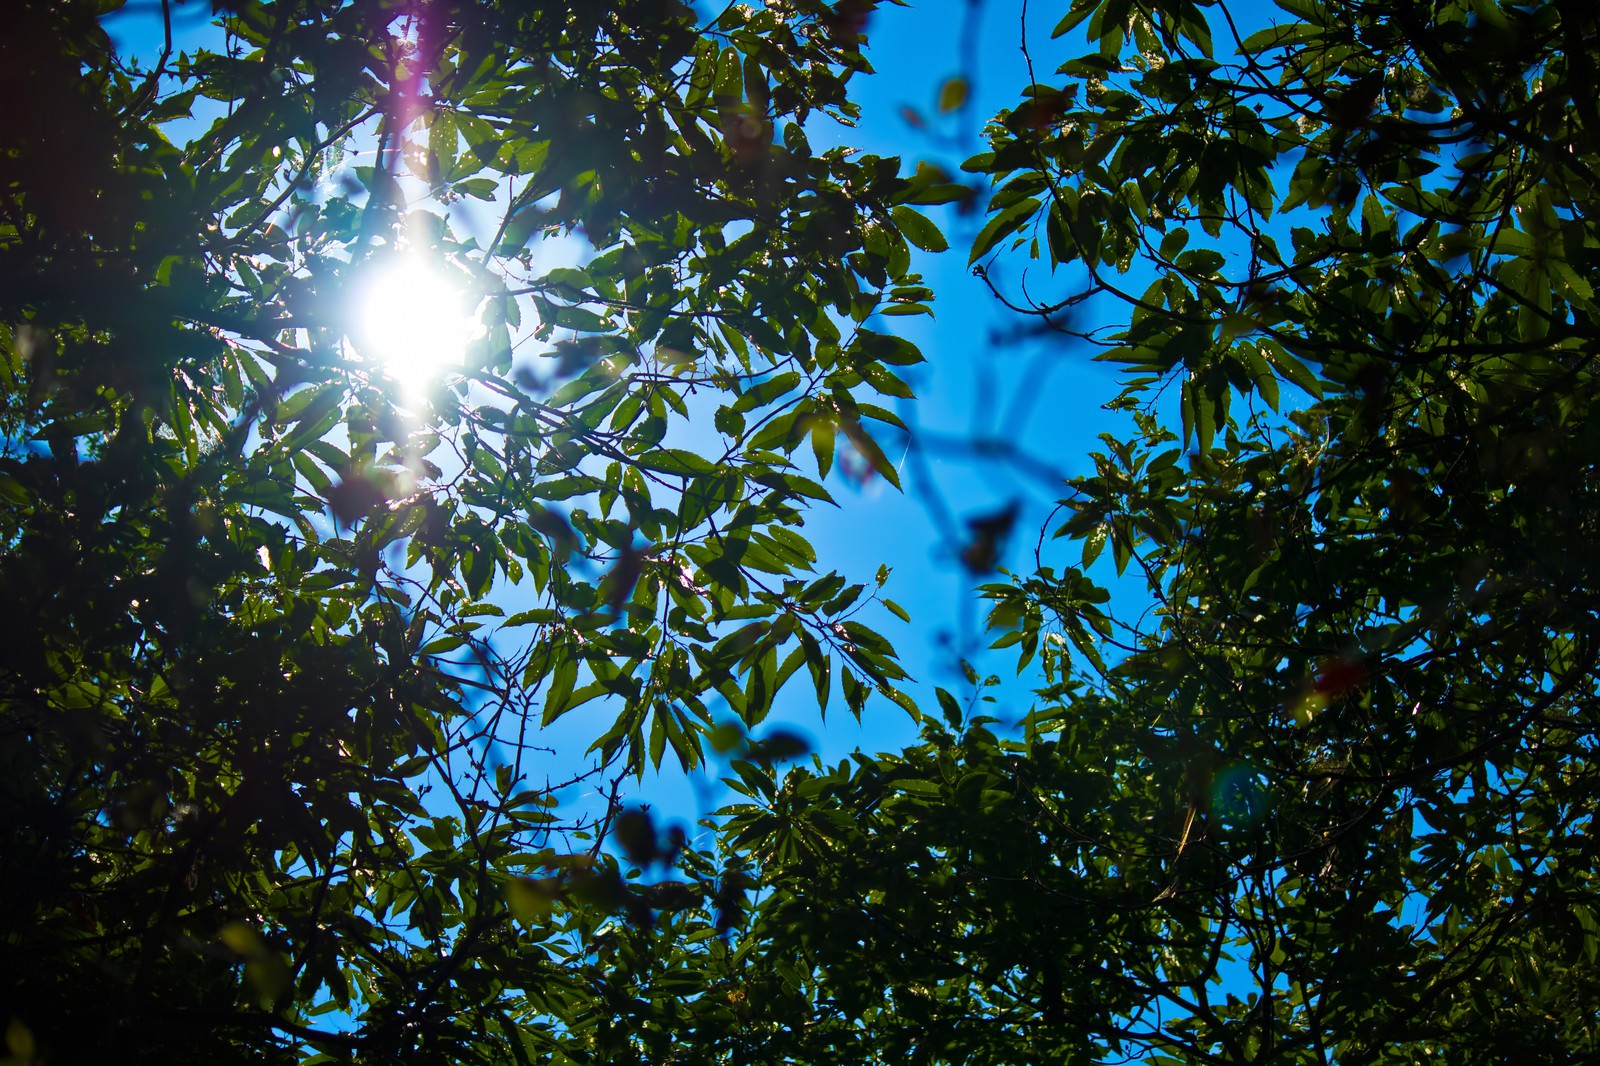 「真夏の木漏れ日真夏の木漏れ日」のフリー写真素材を拡大